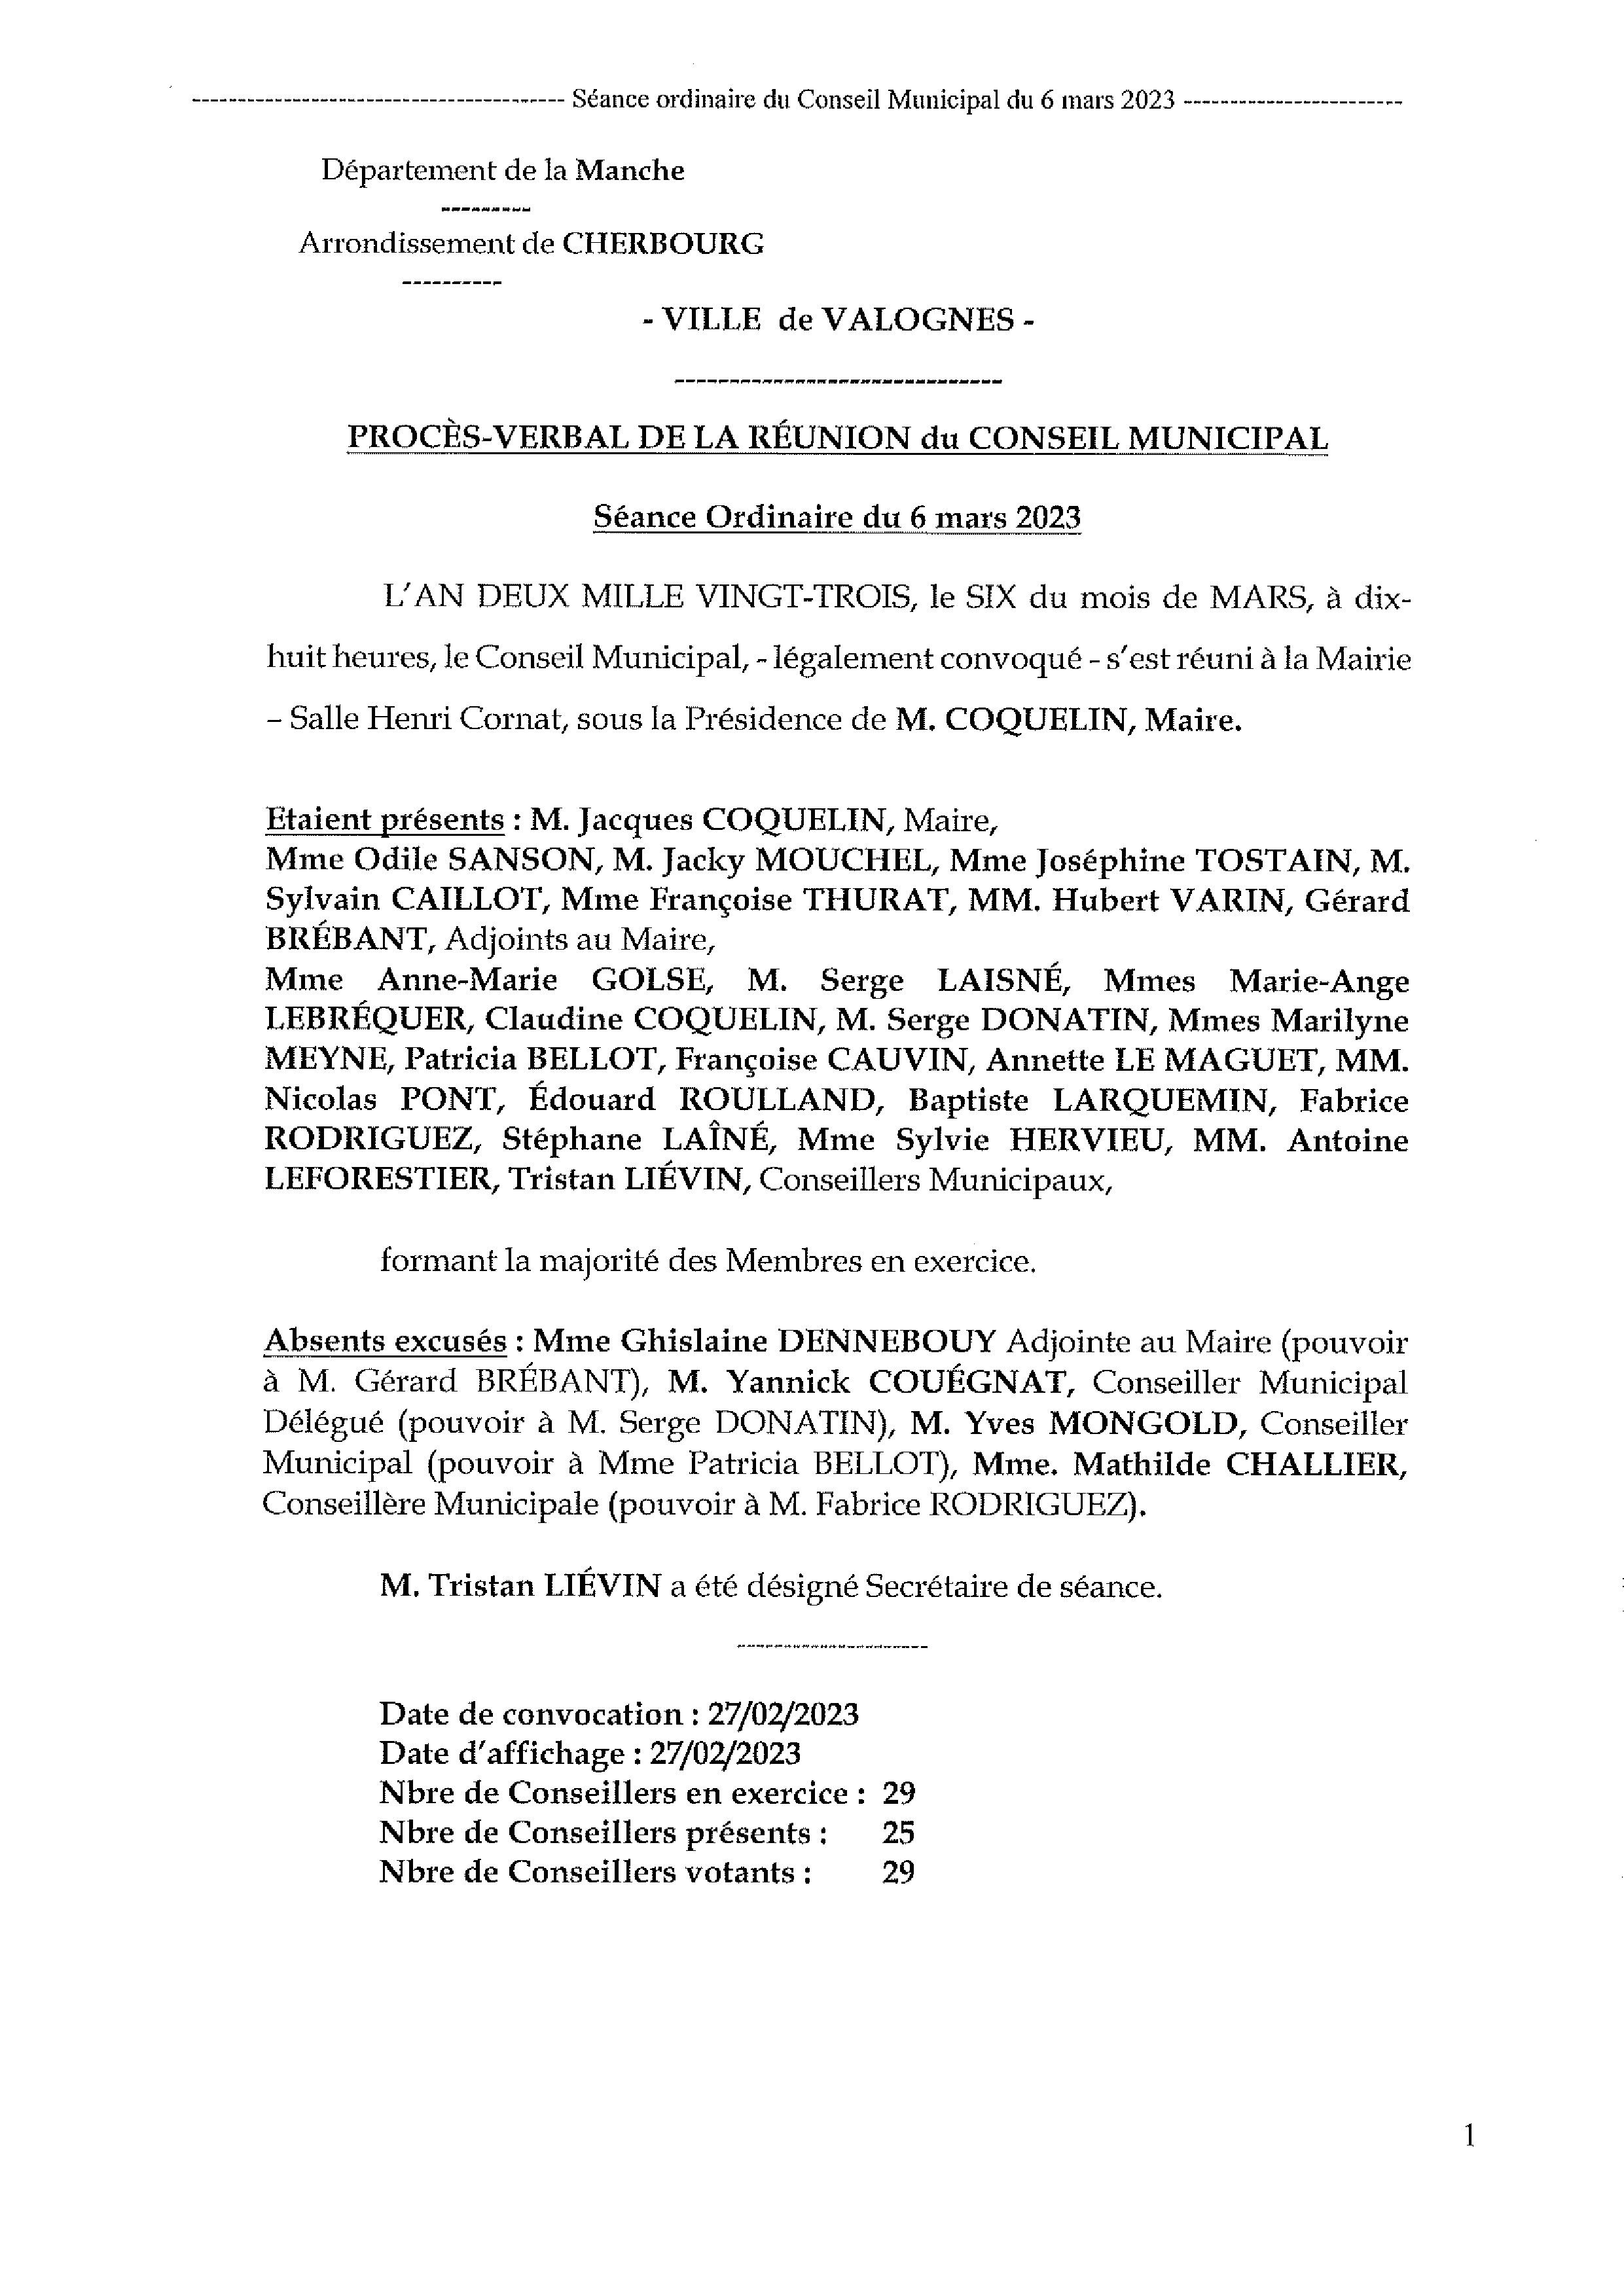 Procès-verbal CM 06 03 23 - Procès-verbal de la réunion du Conseil Municipal du 6 mars 2023, approuvé à l